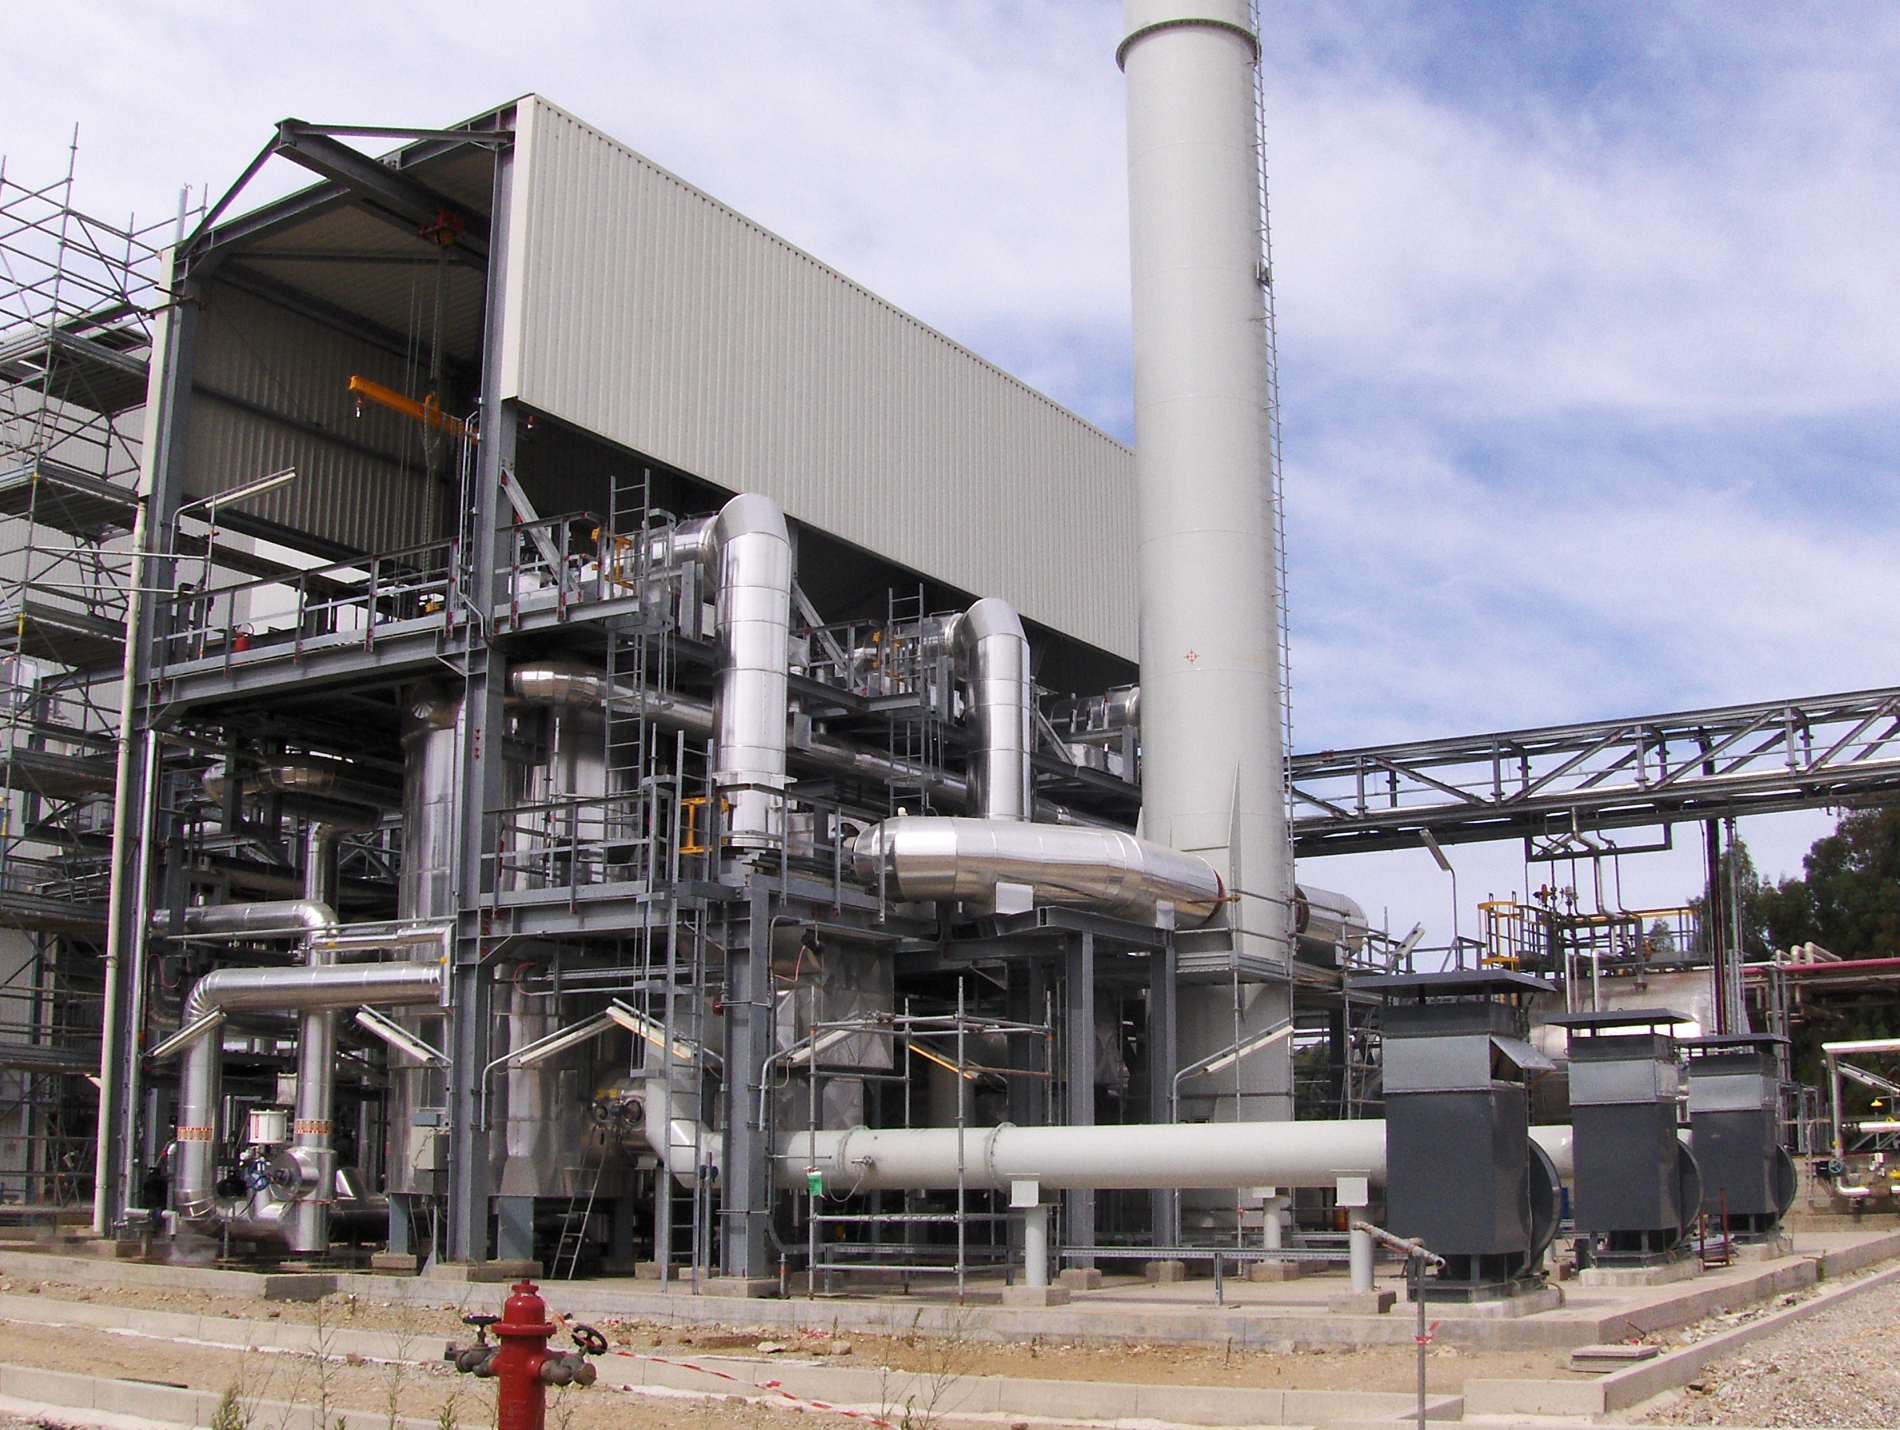 Dow Chemical, Progettazione esecutiva, fornitura e posa in opera di strutture metalliche zincate a caldo per edificio industriale